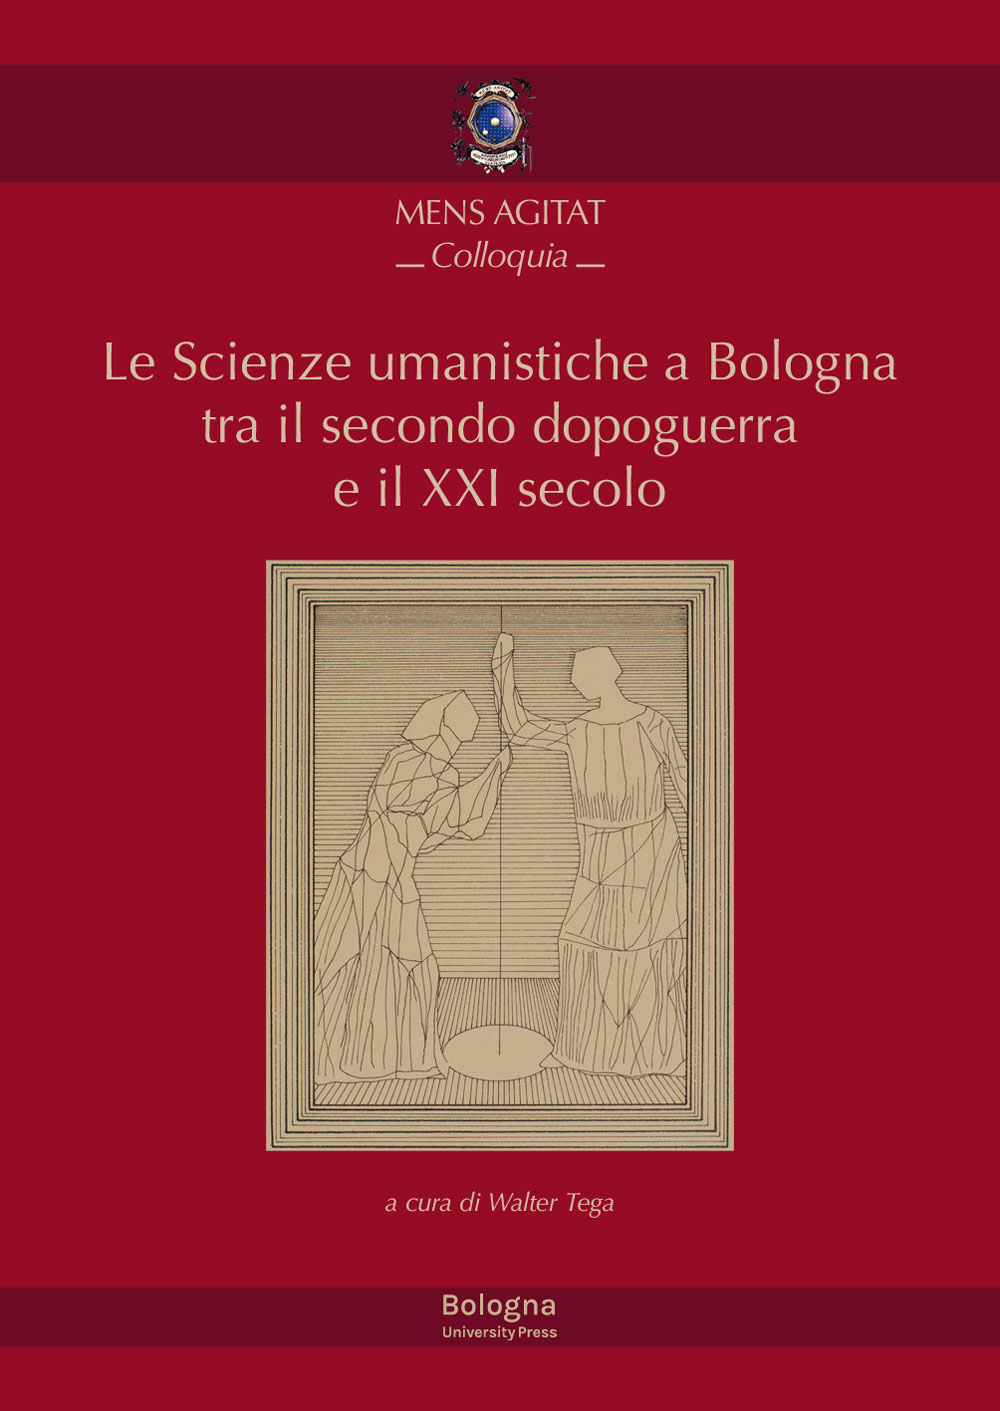 Le Scienze umanistiche a Bologna tra il secondo dopoguerra e il XXI secolo - Bologna University Press